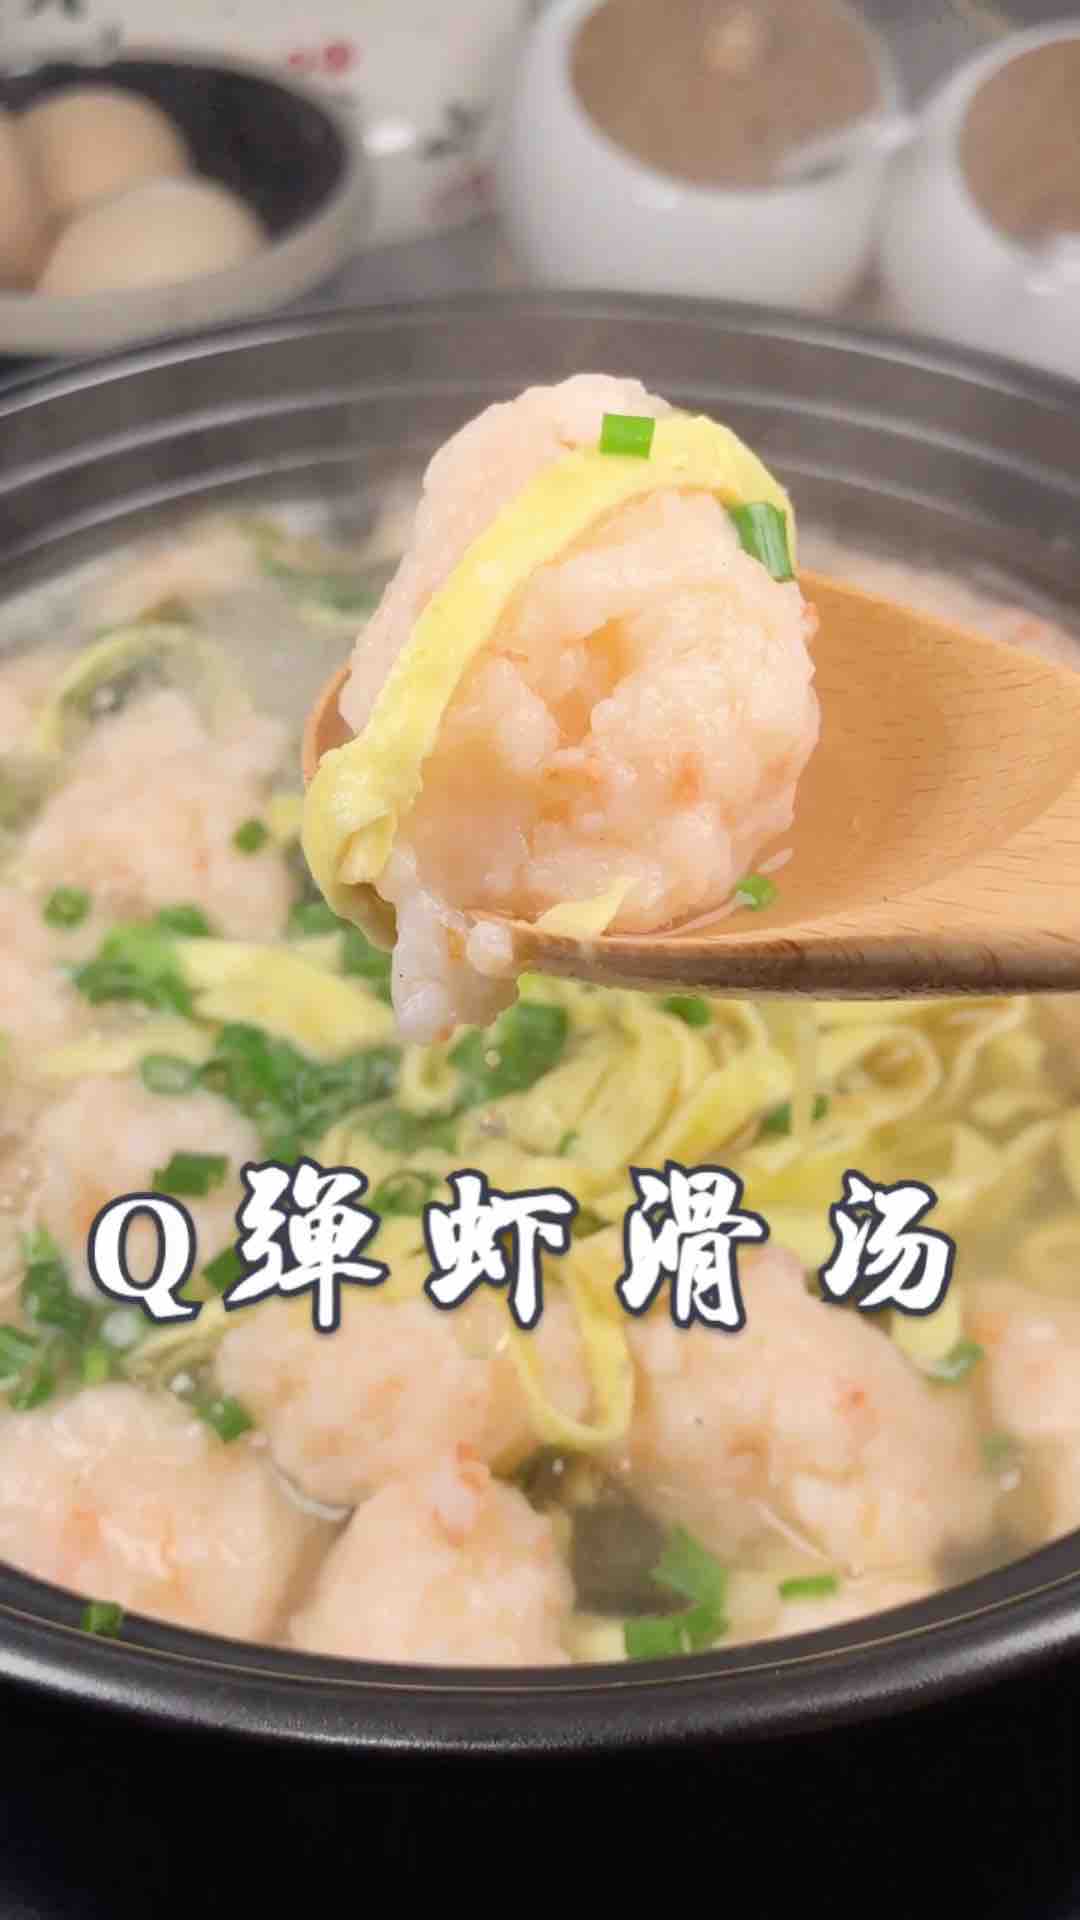 Q Bomb Shrimp Soup